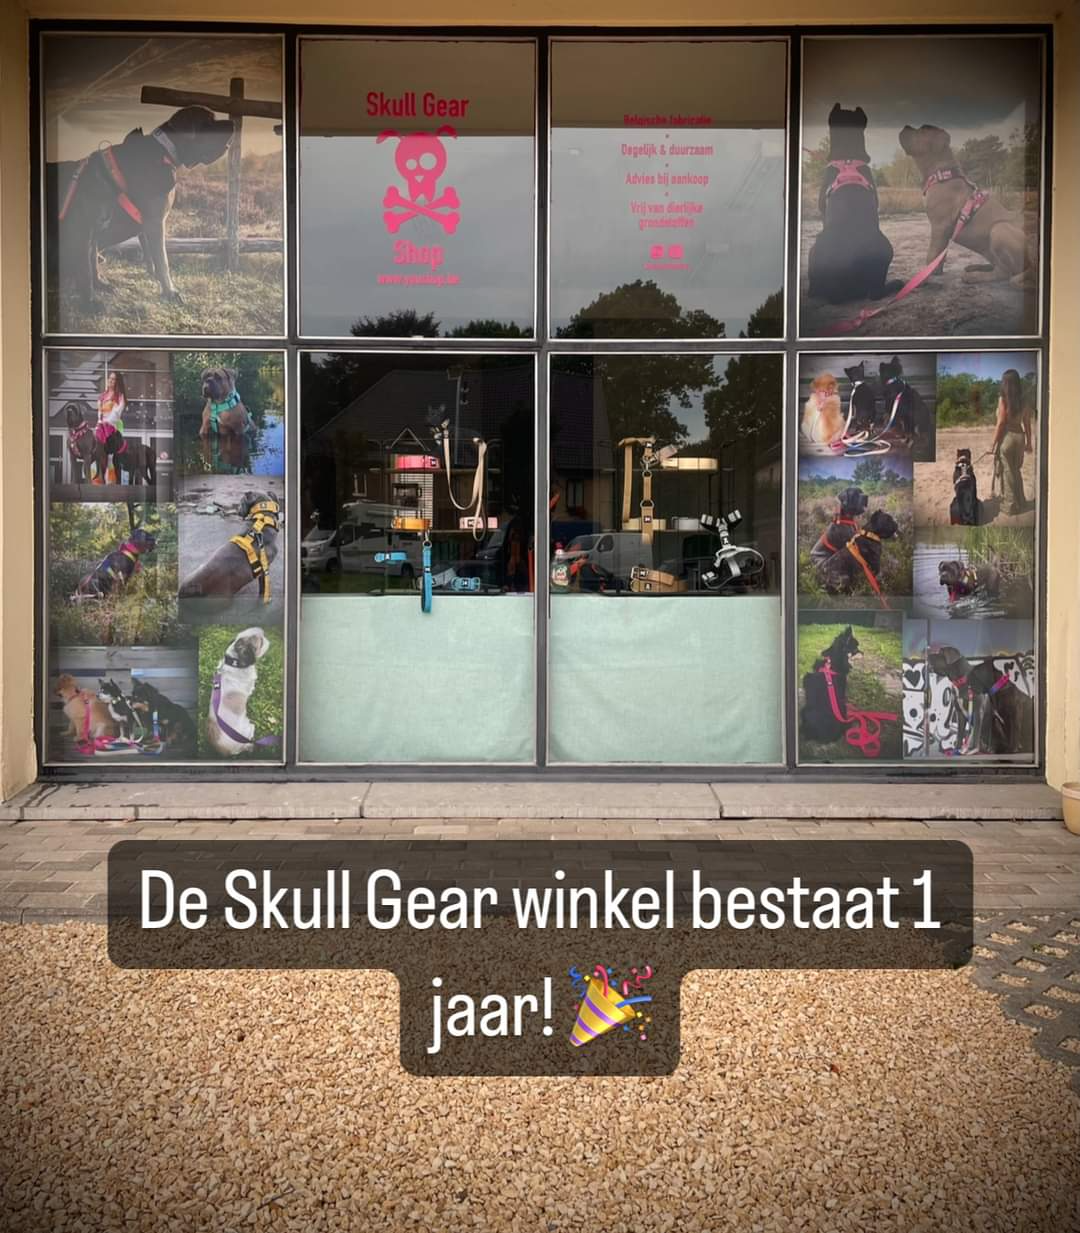 1-jarig bestaan Skull Gear winkel met gratis professioneel portret van je hond!